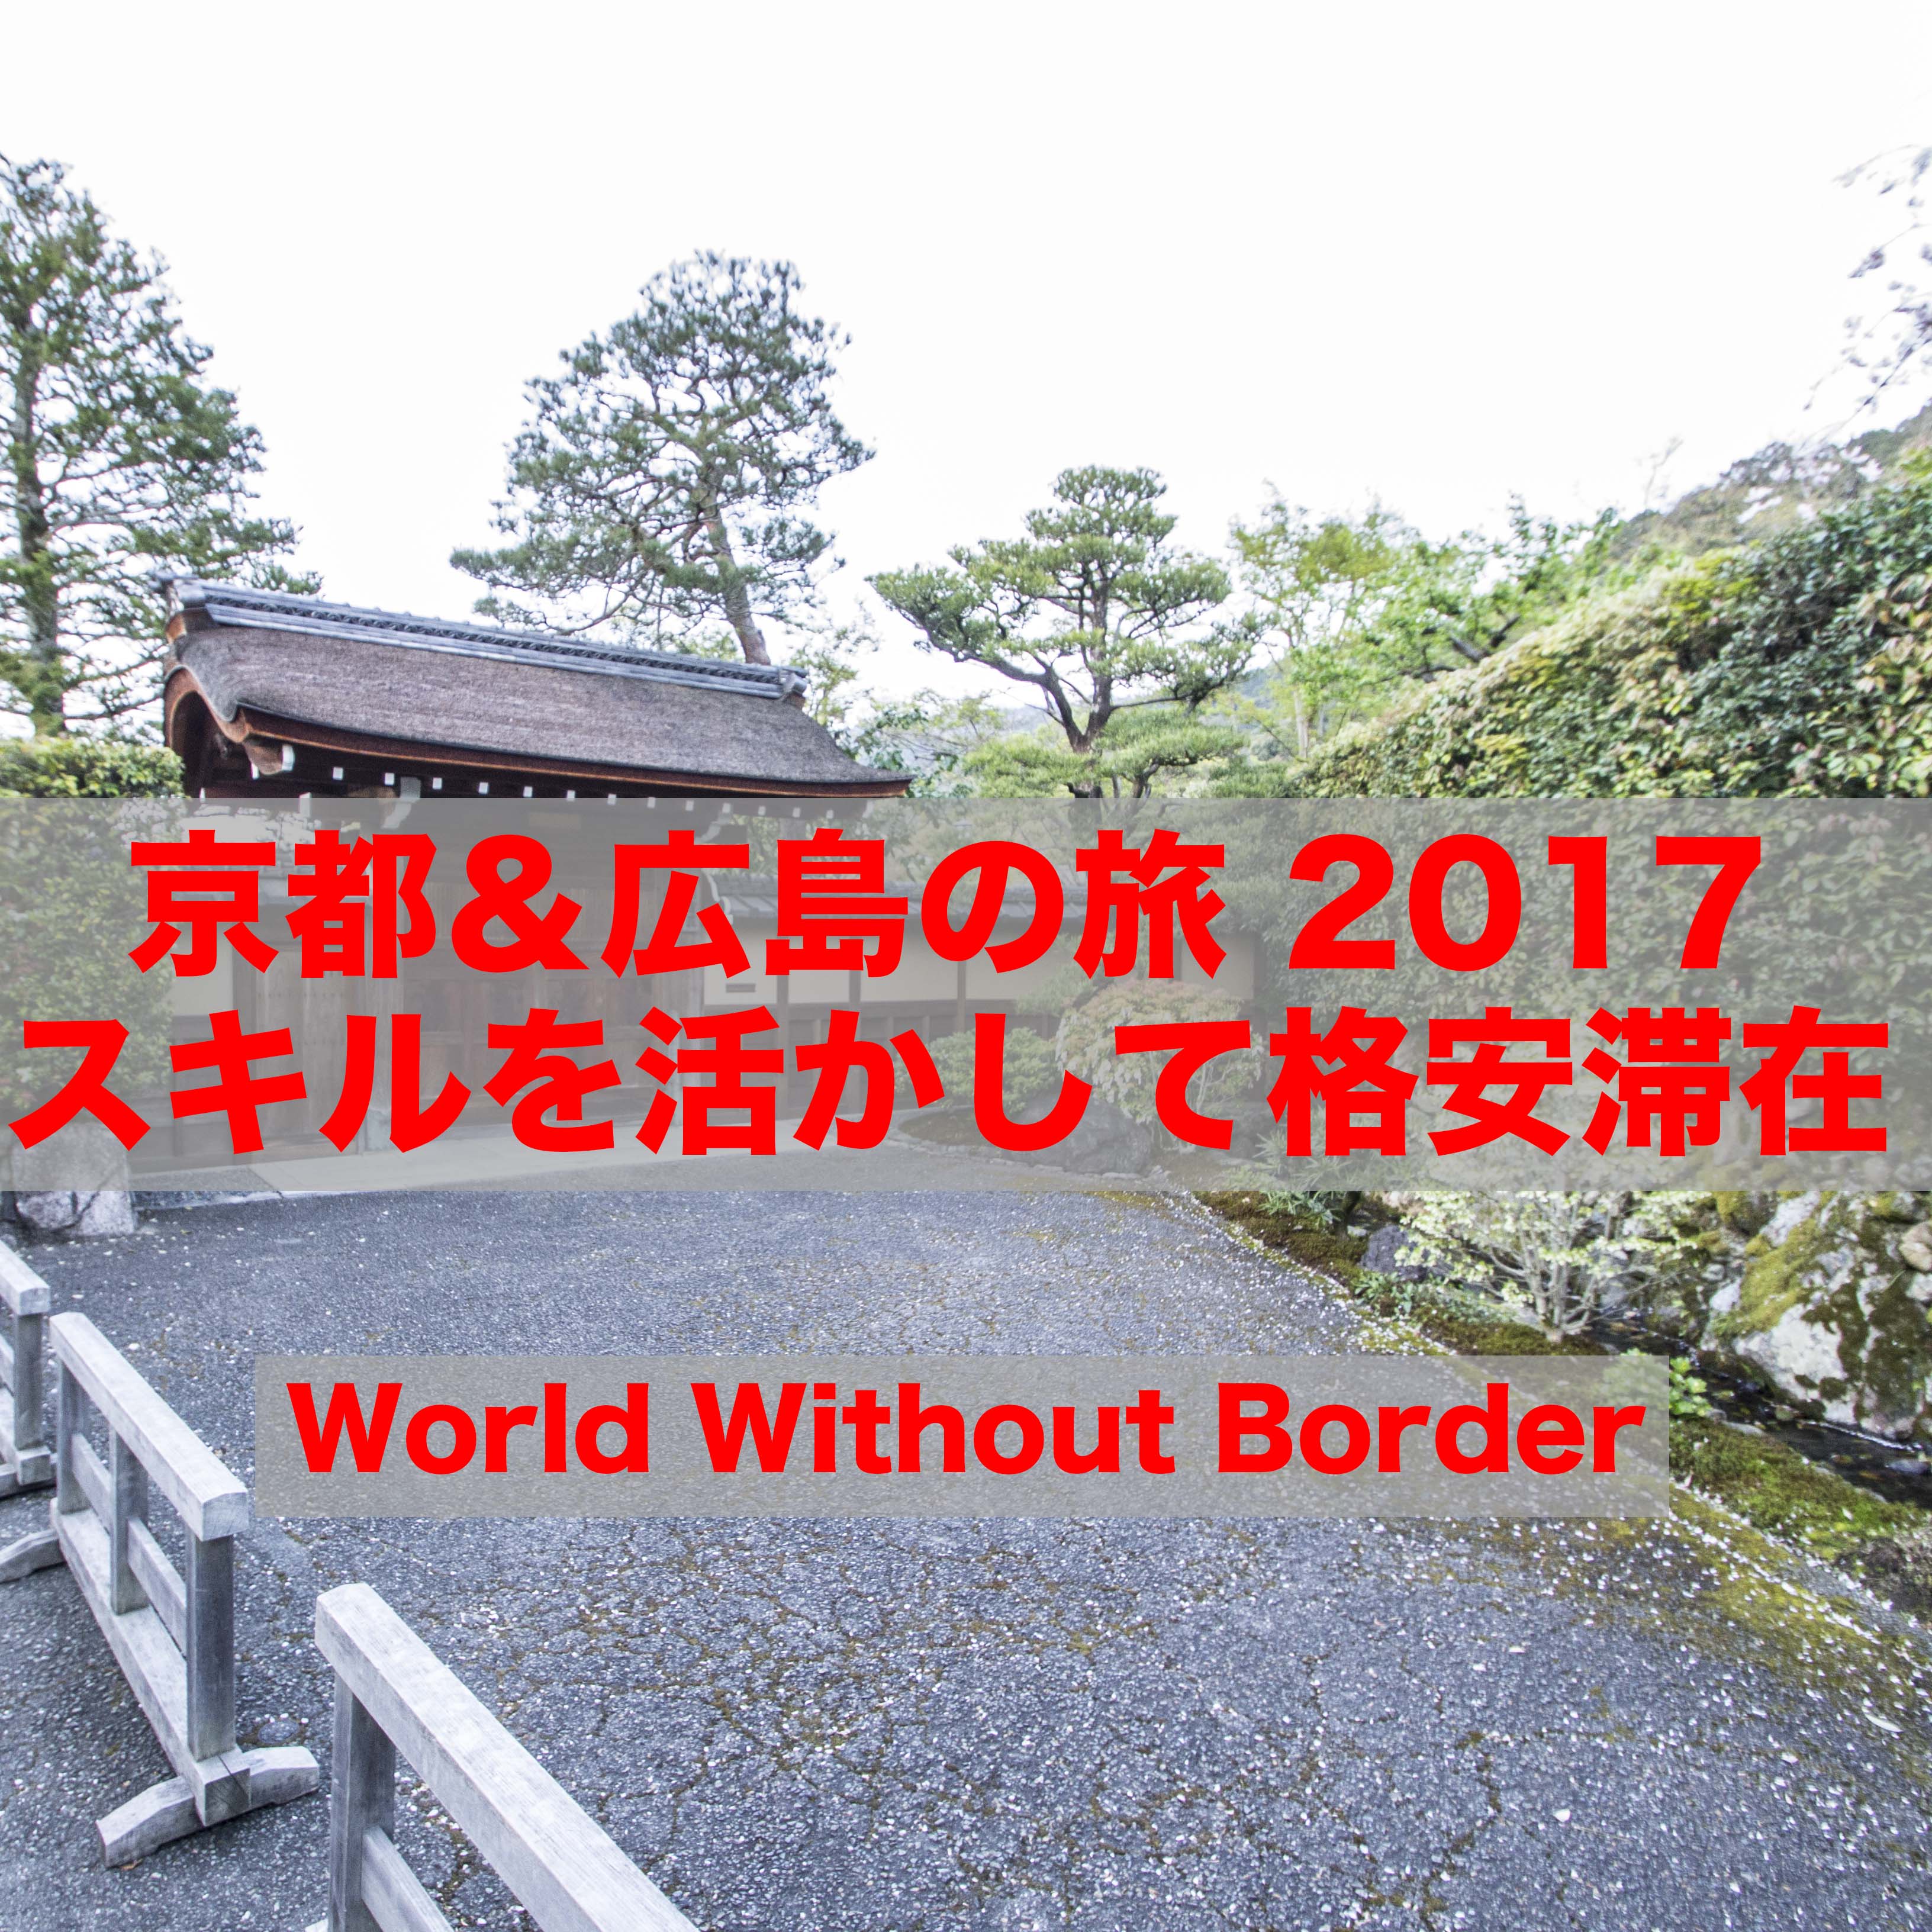 【京都&広島の旅 2017】特技を活かして0円滞在?! airbnb・ゲストハウスのお得な予約方法